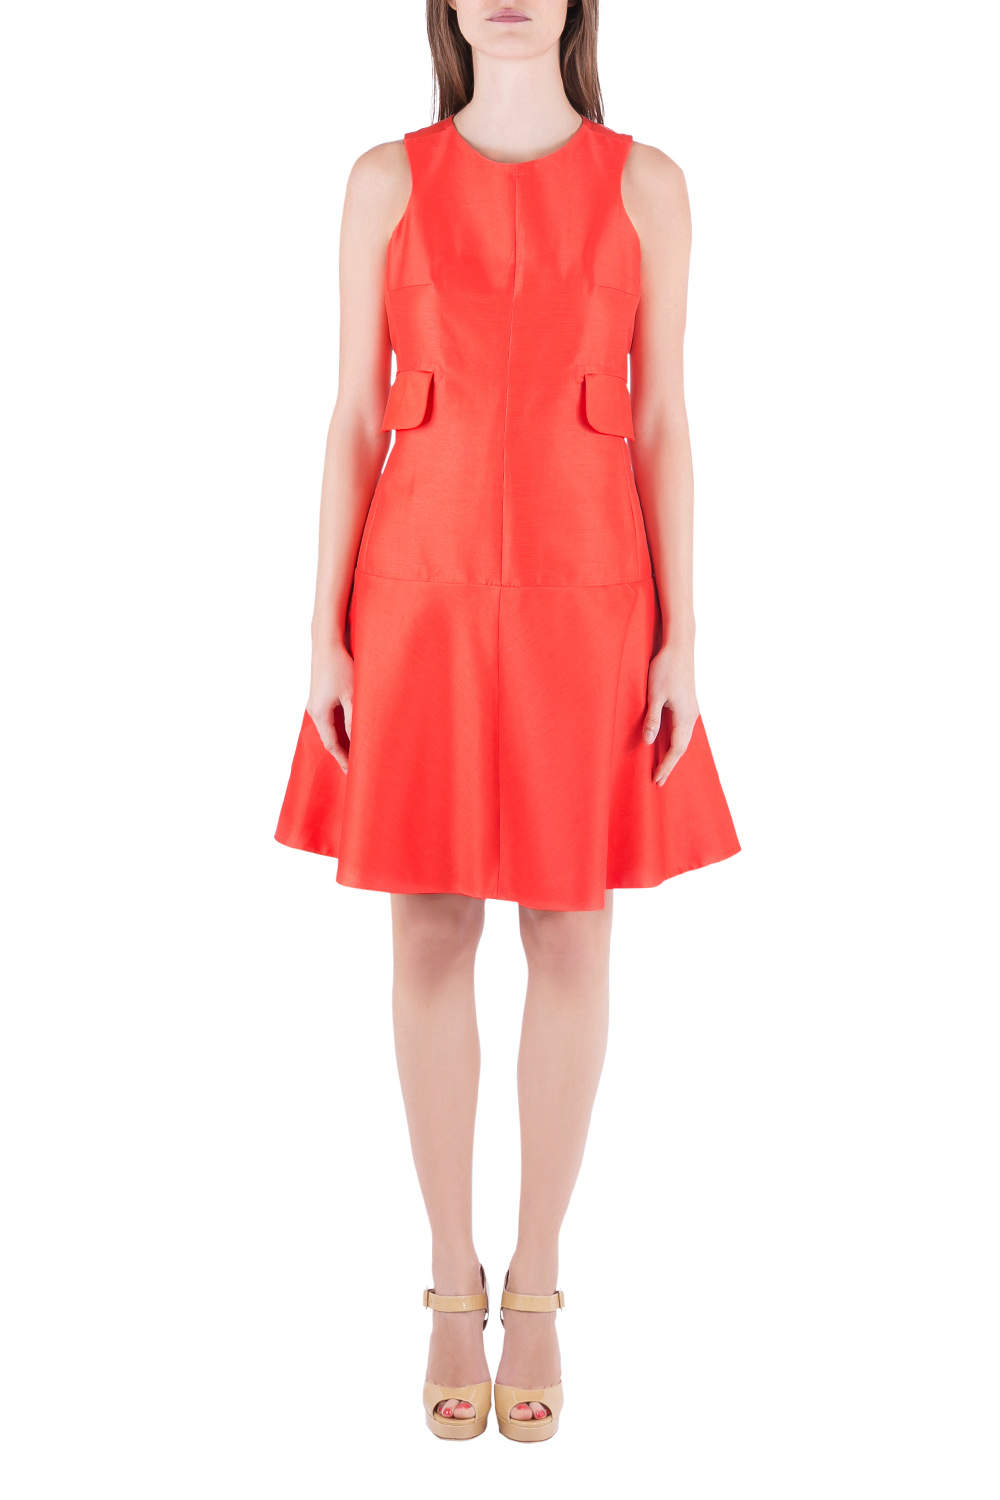 Carven Tangerine Cotton Silk Drop Waist Sleeveless Dress L